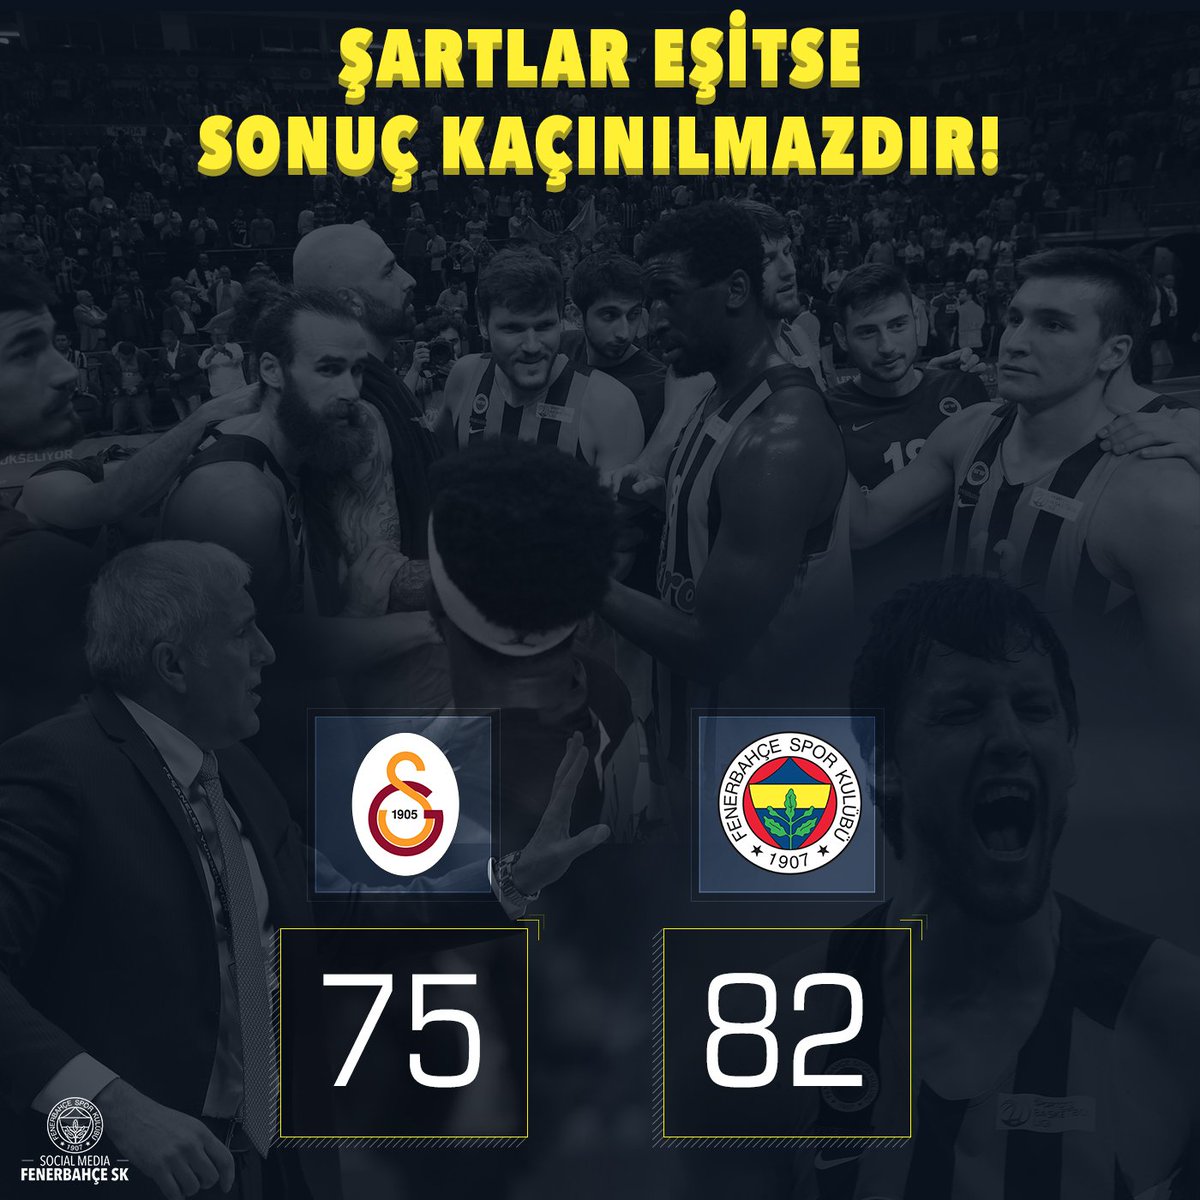 Fenerbahçe, Galatasaray Odeabank'ı 82-75 mağlup ederek finale yükseldi. Karşılaşma sonrası ise iki koç Zeljko Obradovic ile Ergin Ataman tartıştı. CjzmysGUkAAtZGT